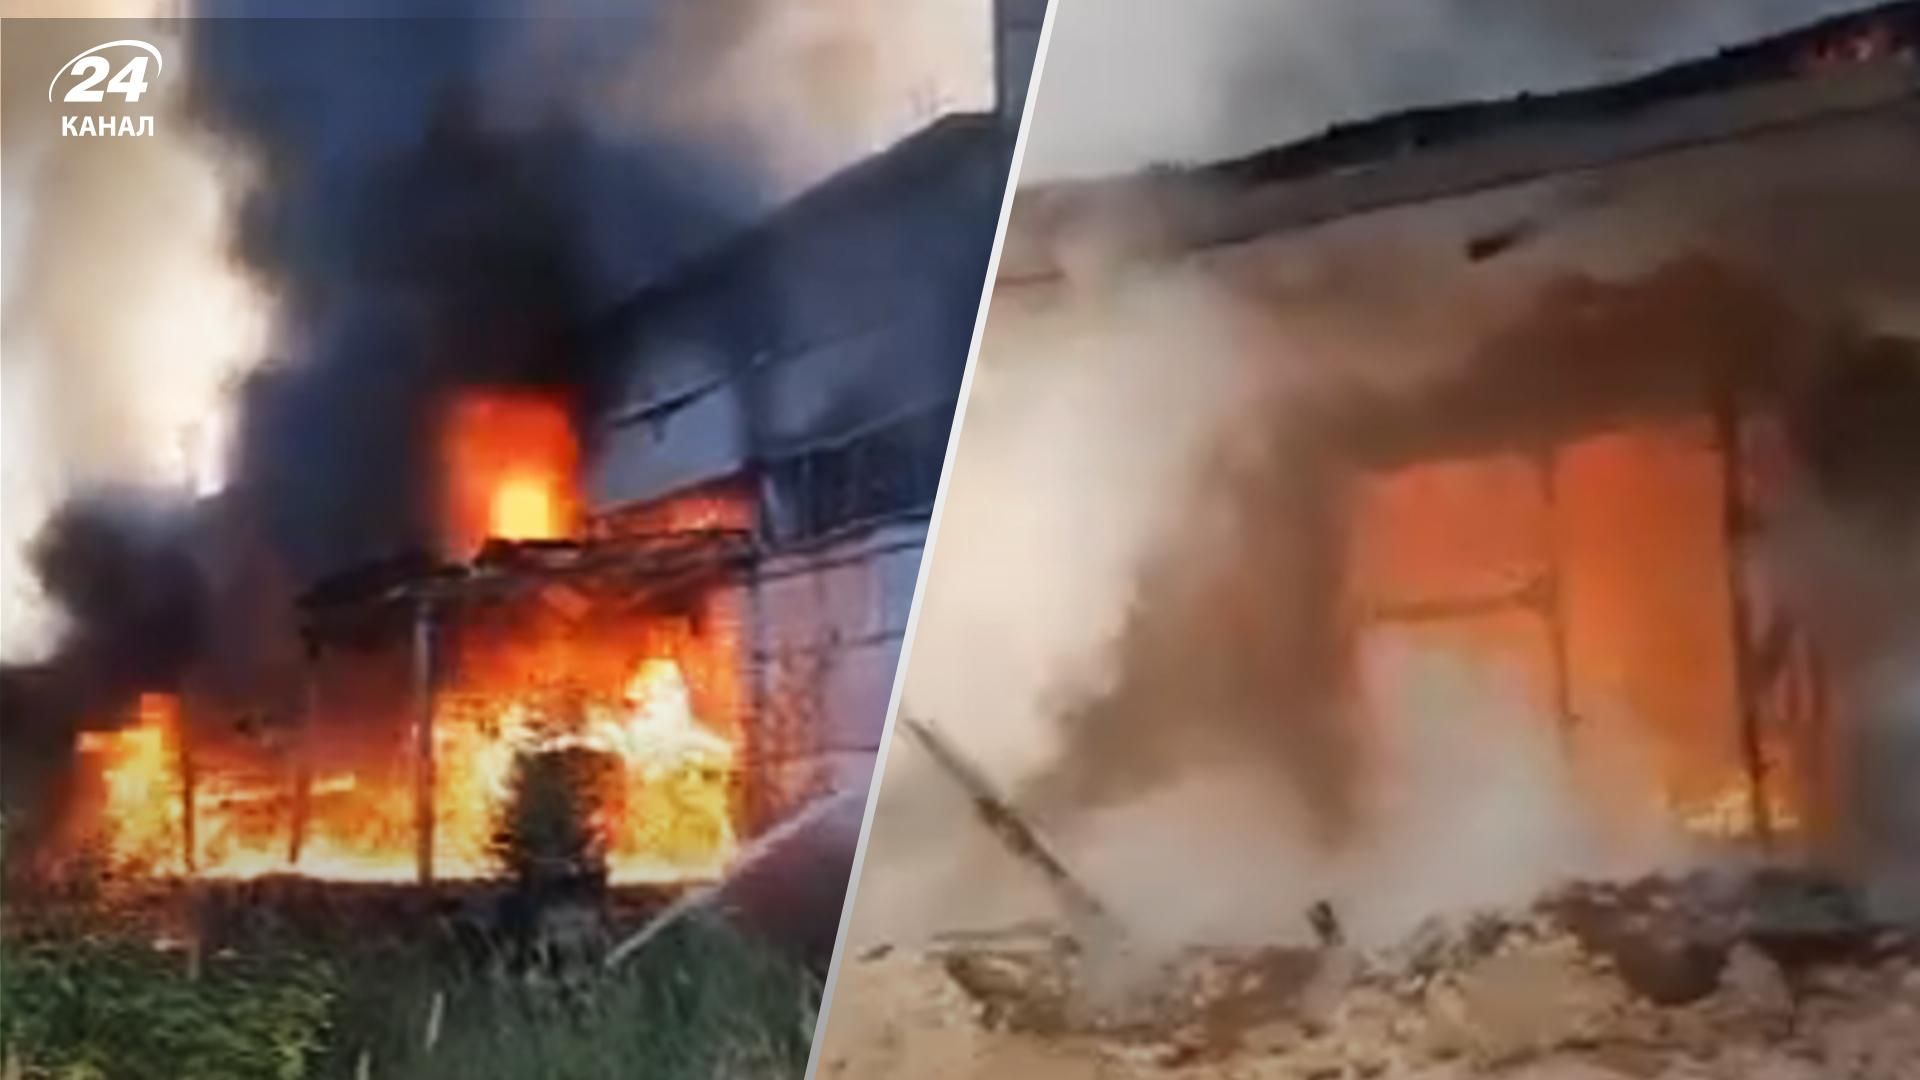 Чергова масштабна пожежа спалахнула у росії 14 серпня – горить хімзавод у Казані